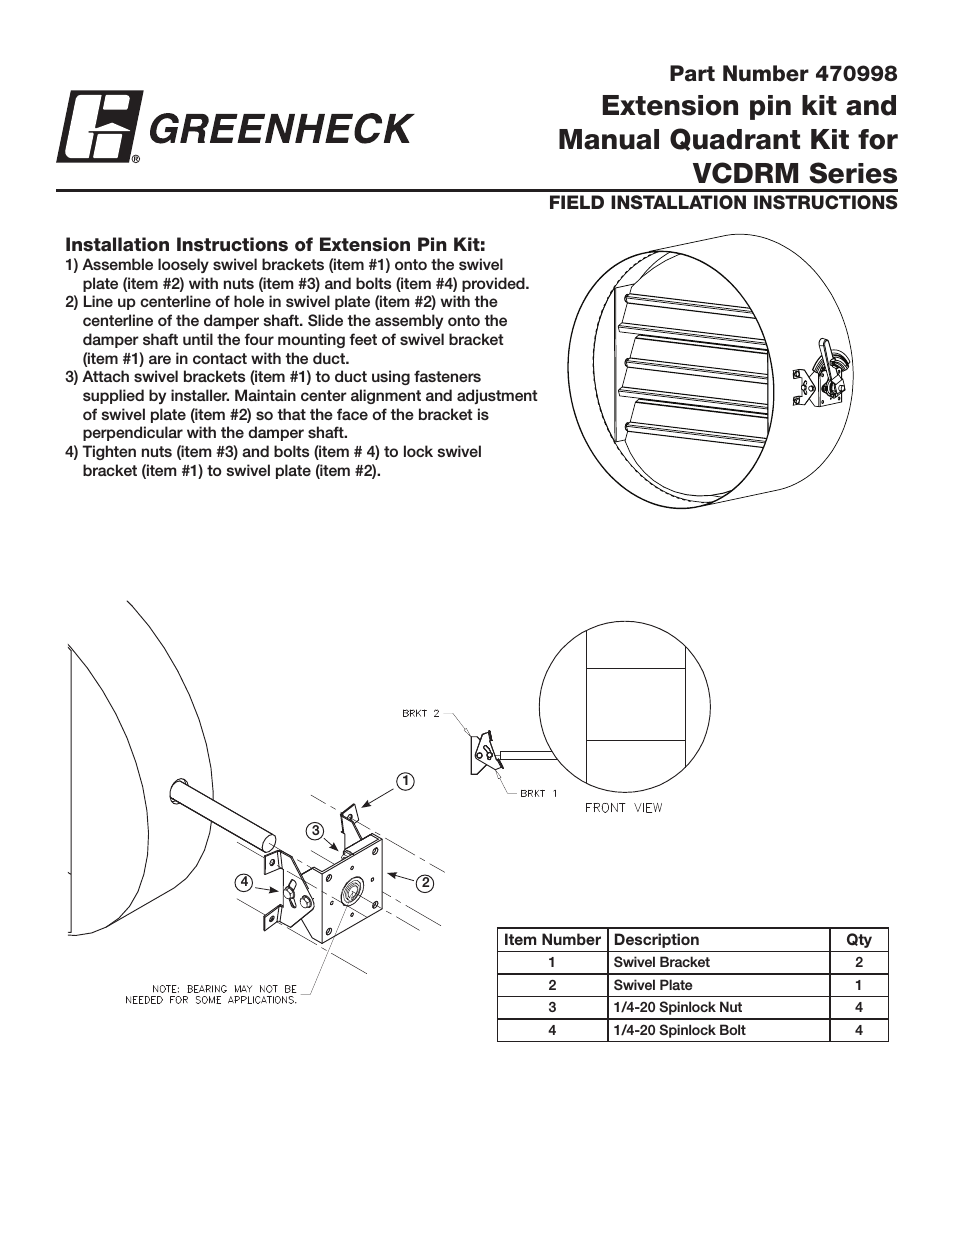 Extension Pin Kit & Manual Quadrant kit for VCDRM (470998)